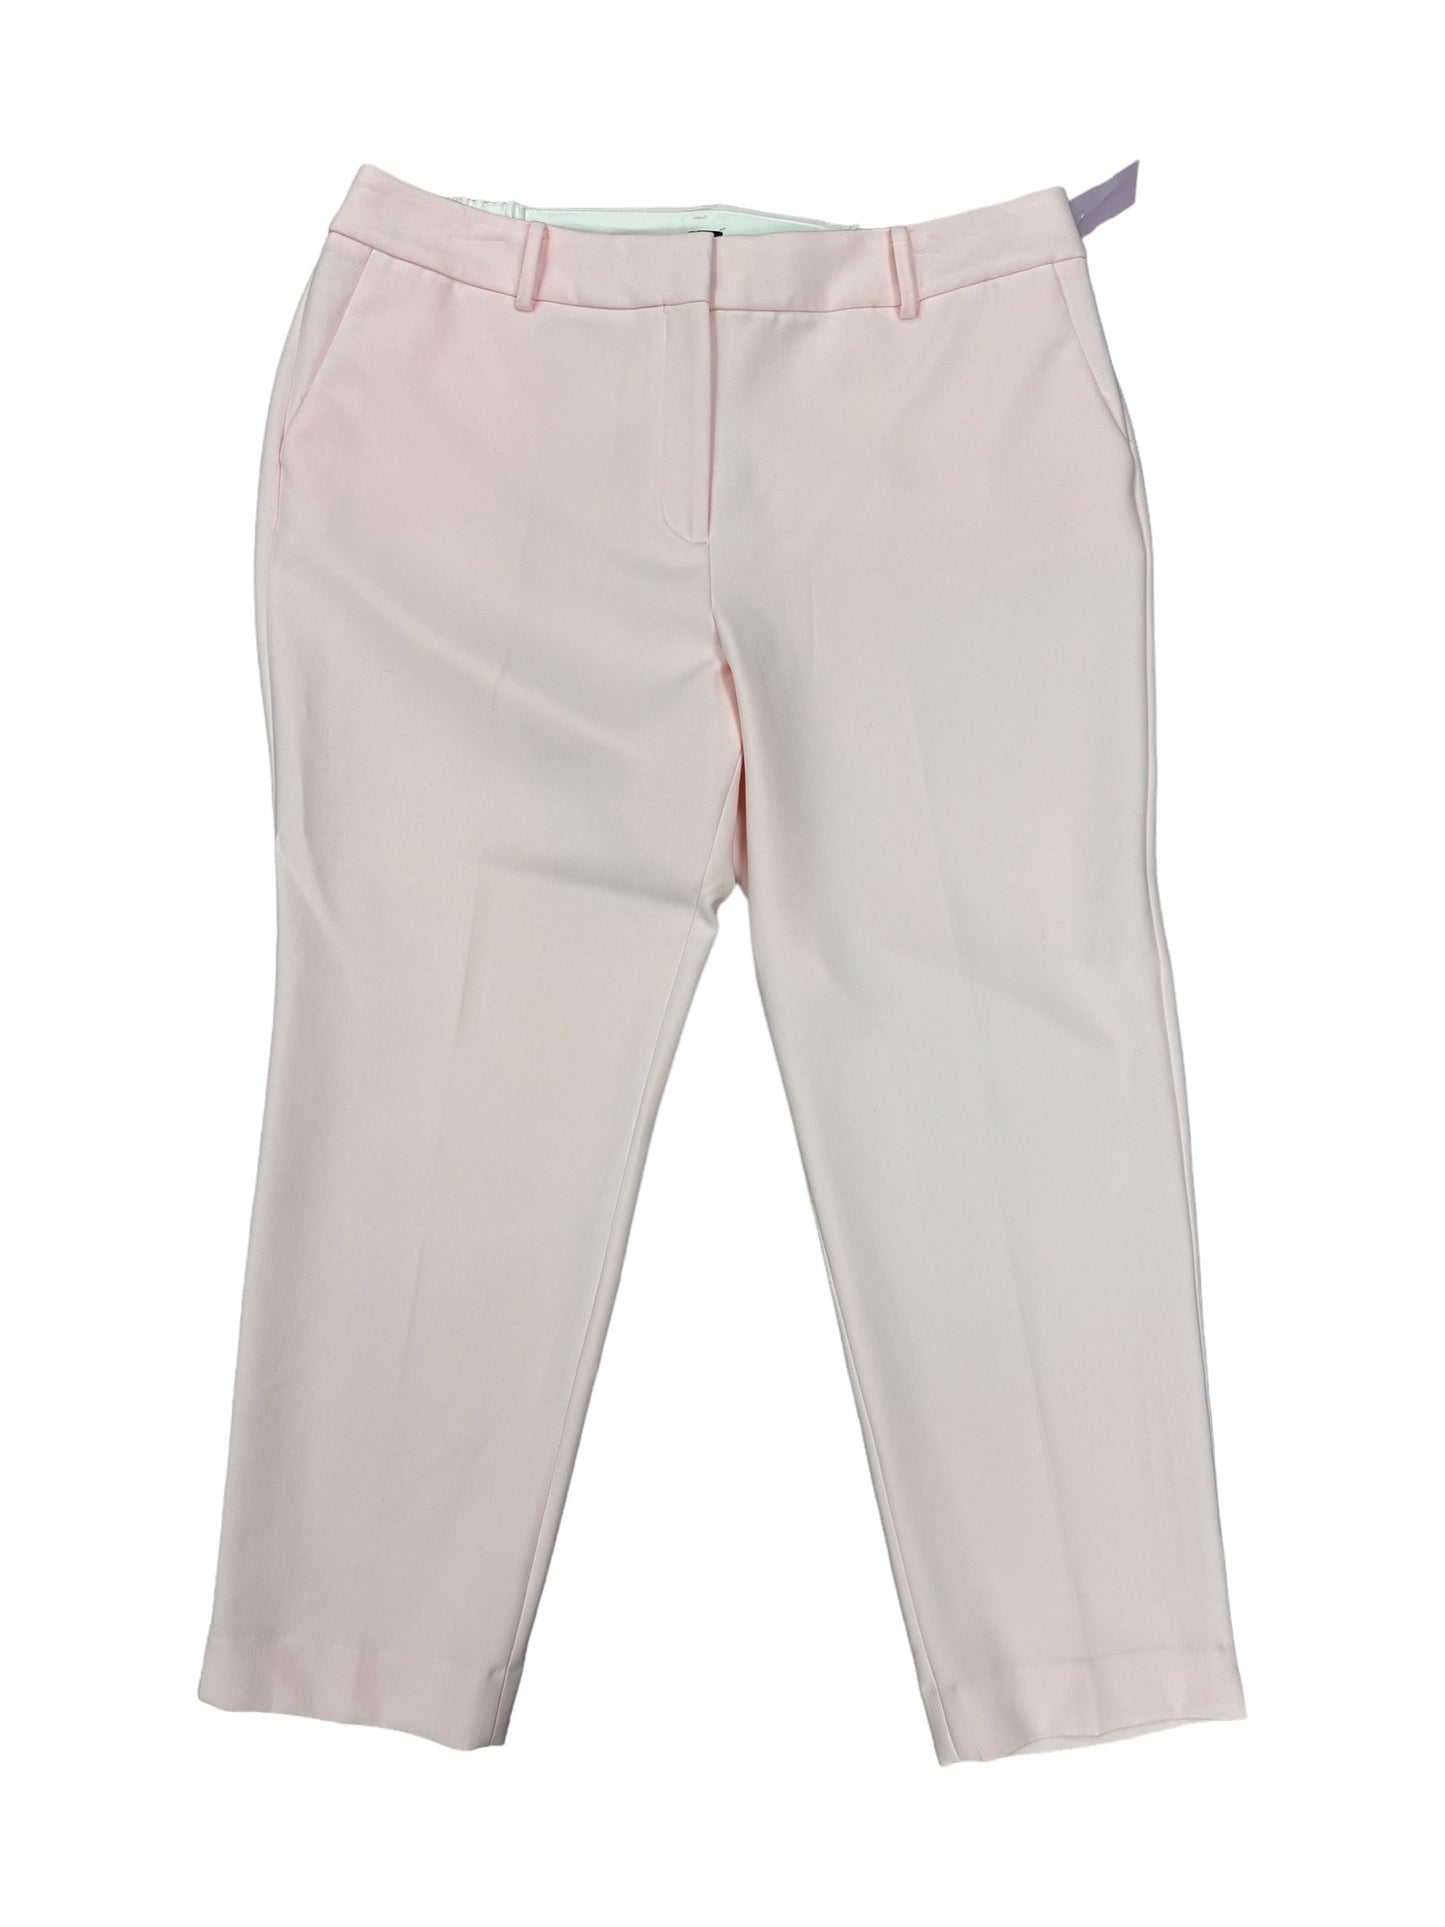 Pink Pants Dress Talbots, Size 18